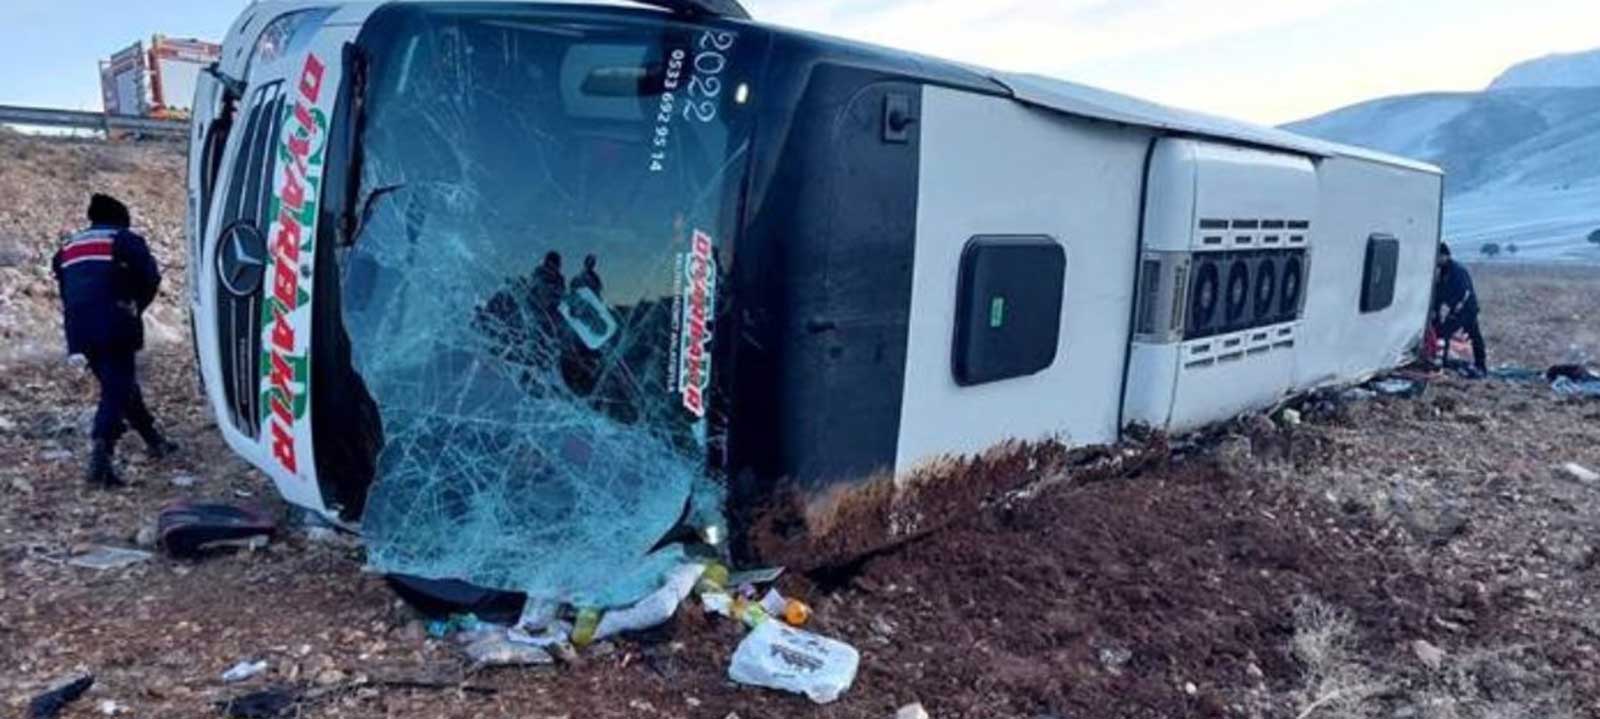 مصرع 8 أشخاص بحادث سير في تركيا